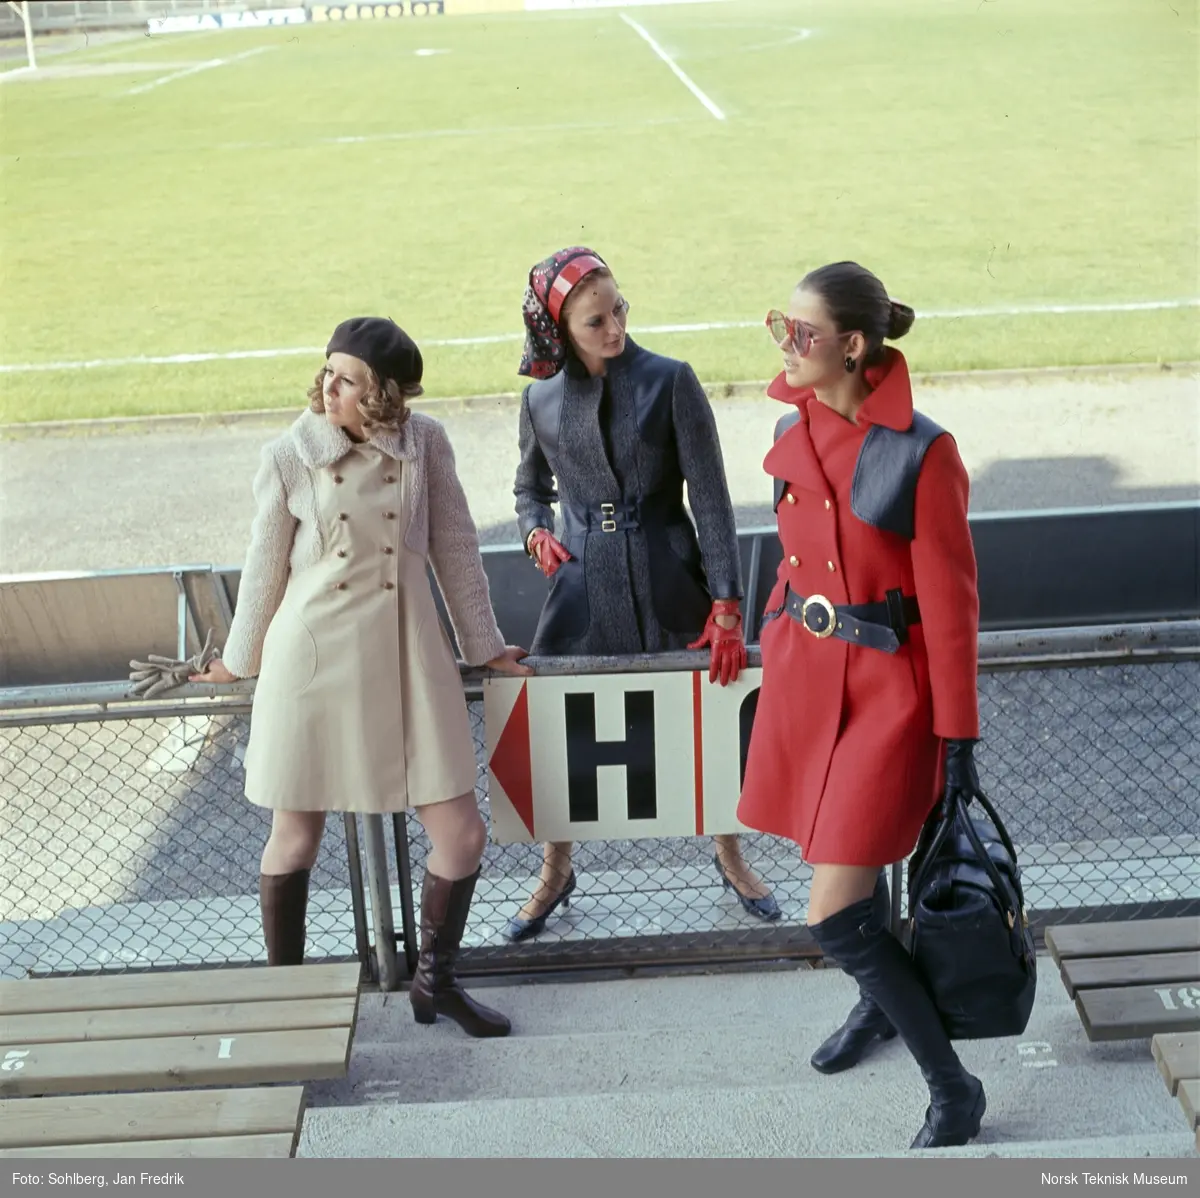 Motebilde, tre kvinner, en i beige, en i grå og en i rød kåpe, på tribune på idrettsplass. Bildet er en del av en serie der noen er publisert i ukebladet Det Nye 1969, nr. 38.